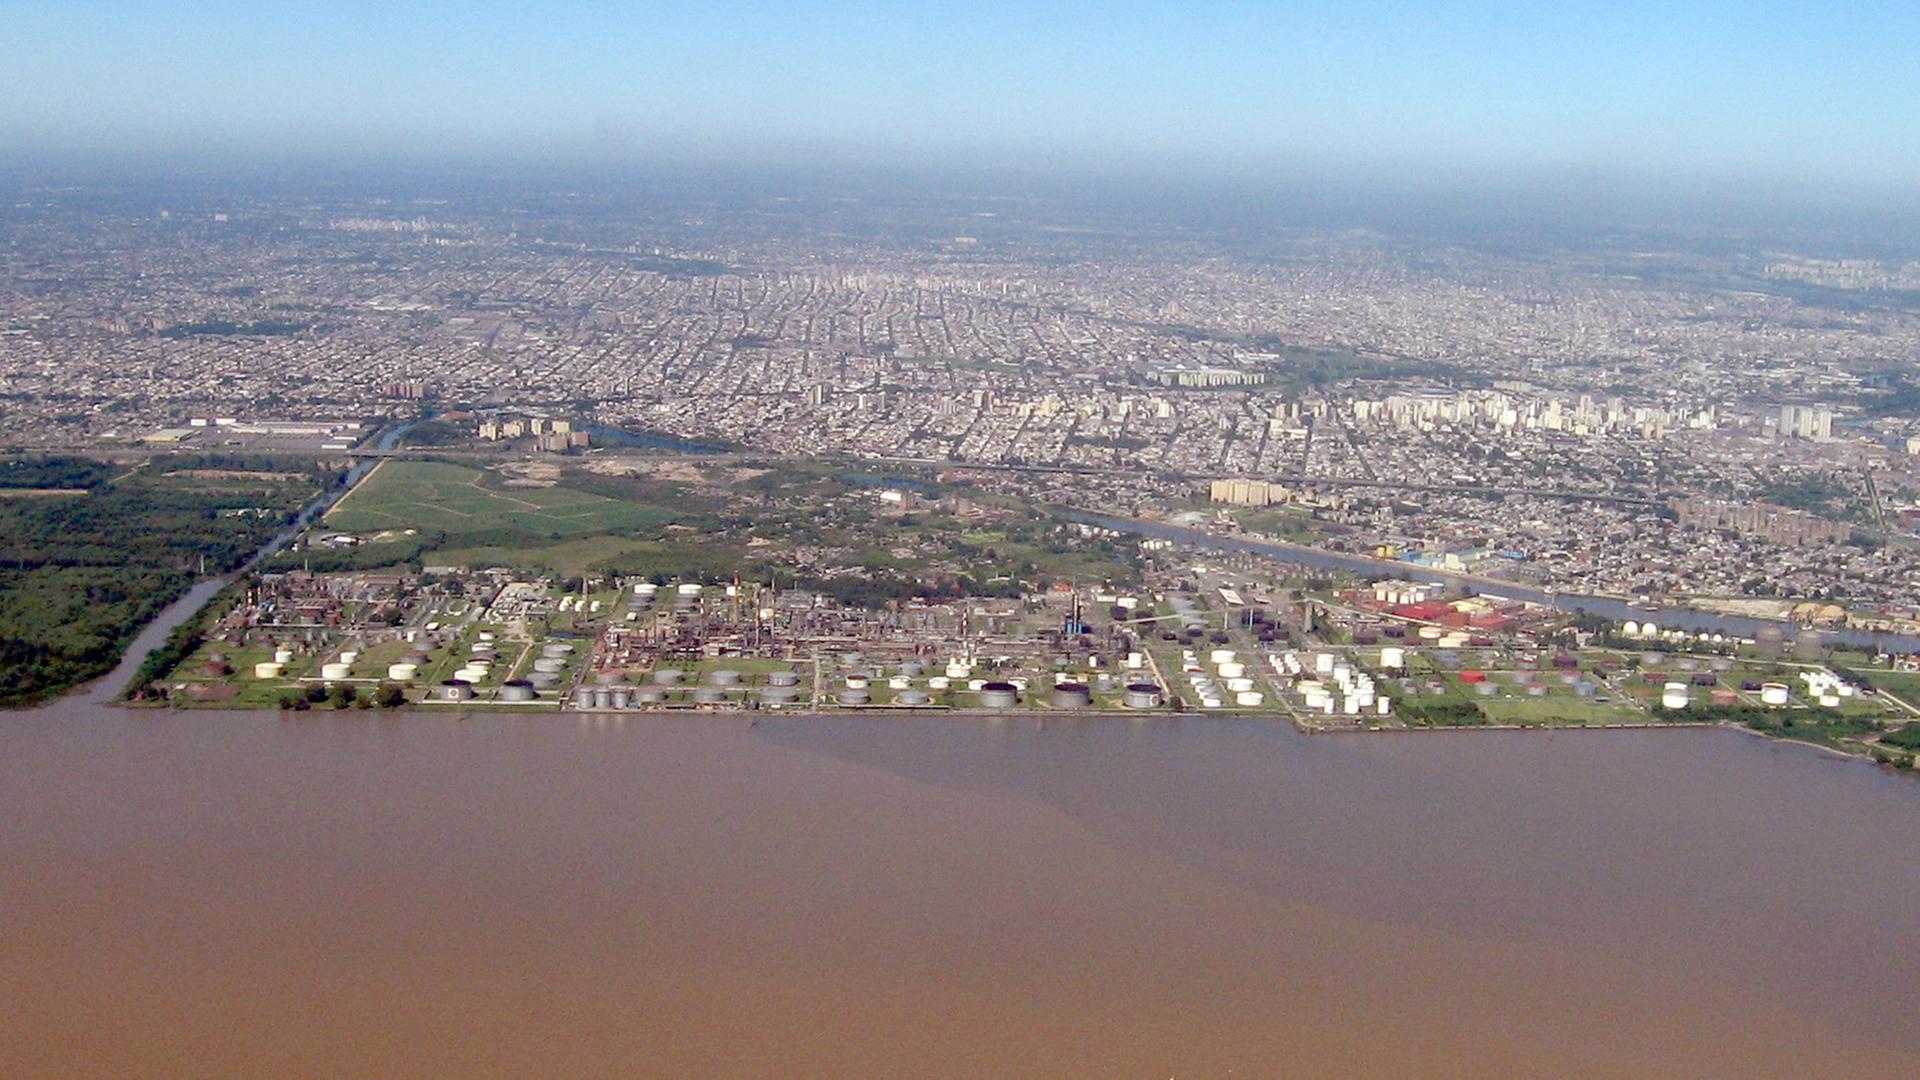 Landeanflug über den Rio de la Plata zum Flughafen von Buenos Aires, der Hauptstadt von Argentinien